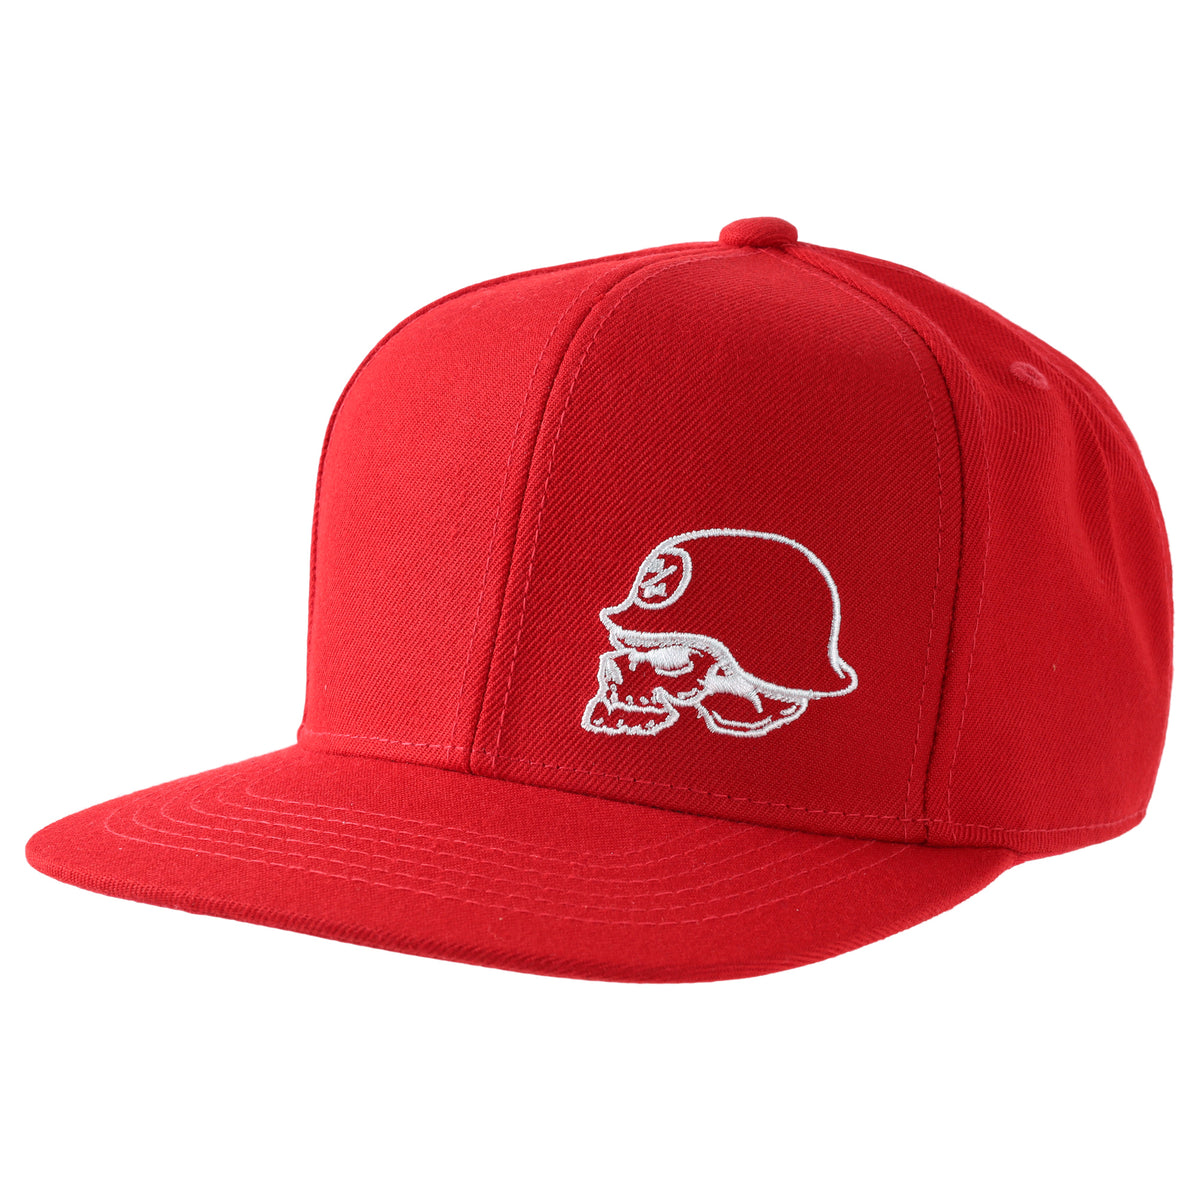 HELMET SNAPBACK HAT RED